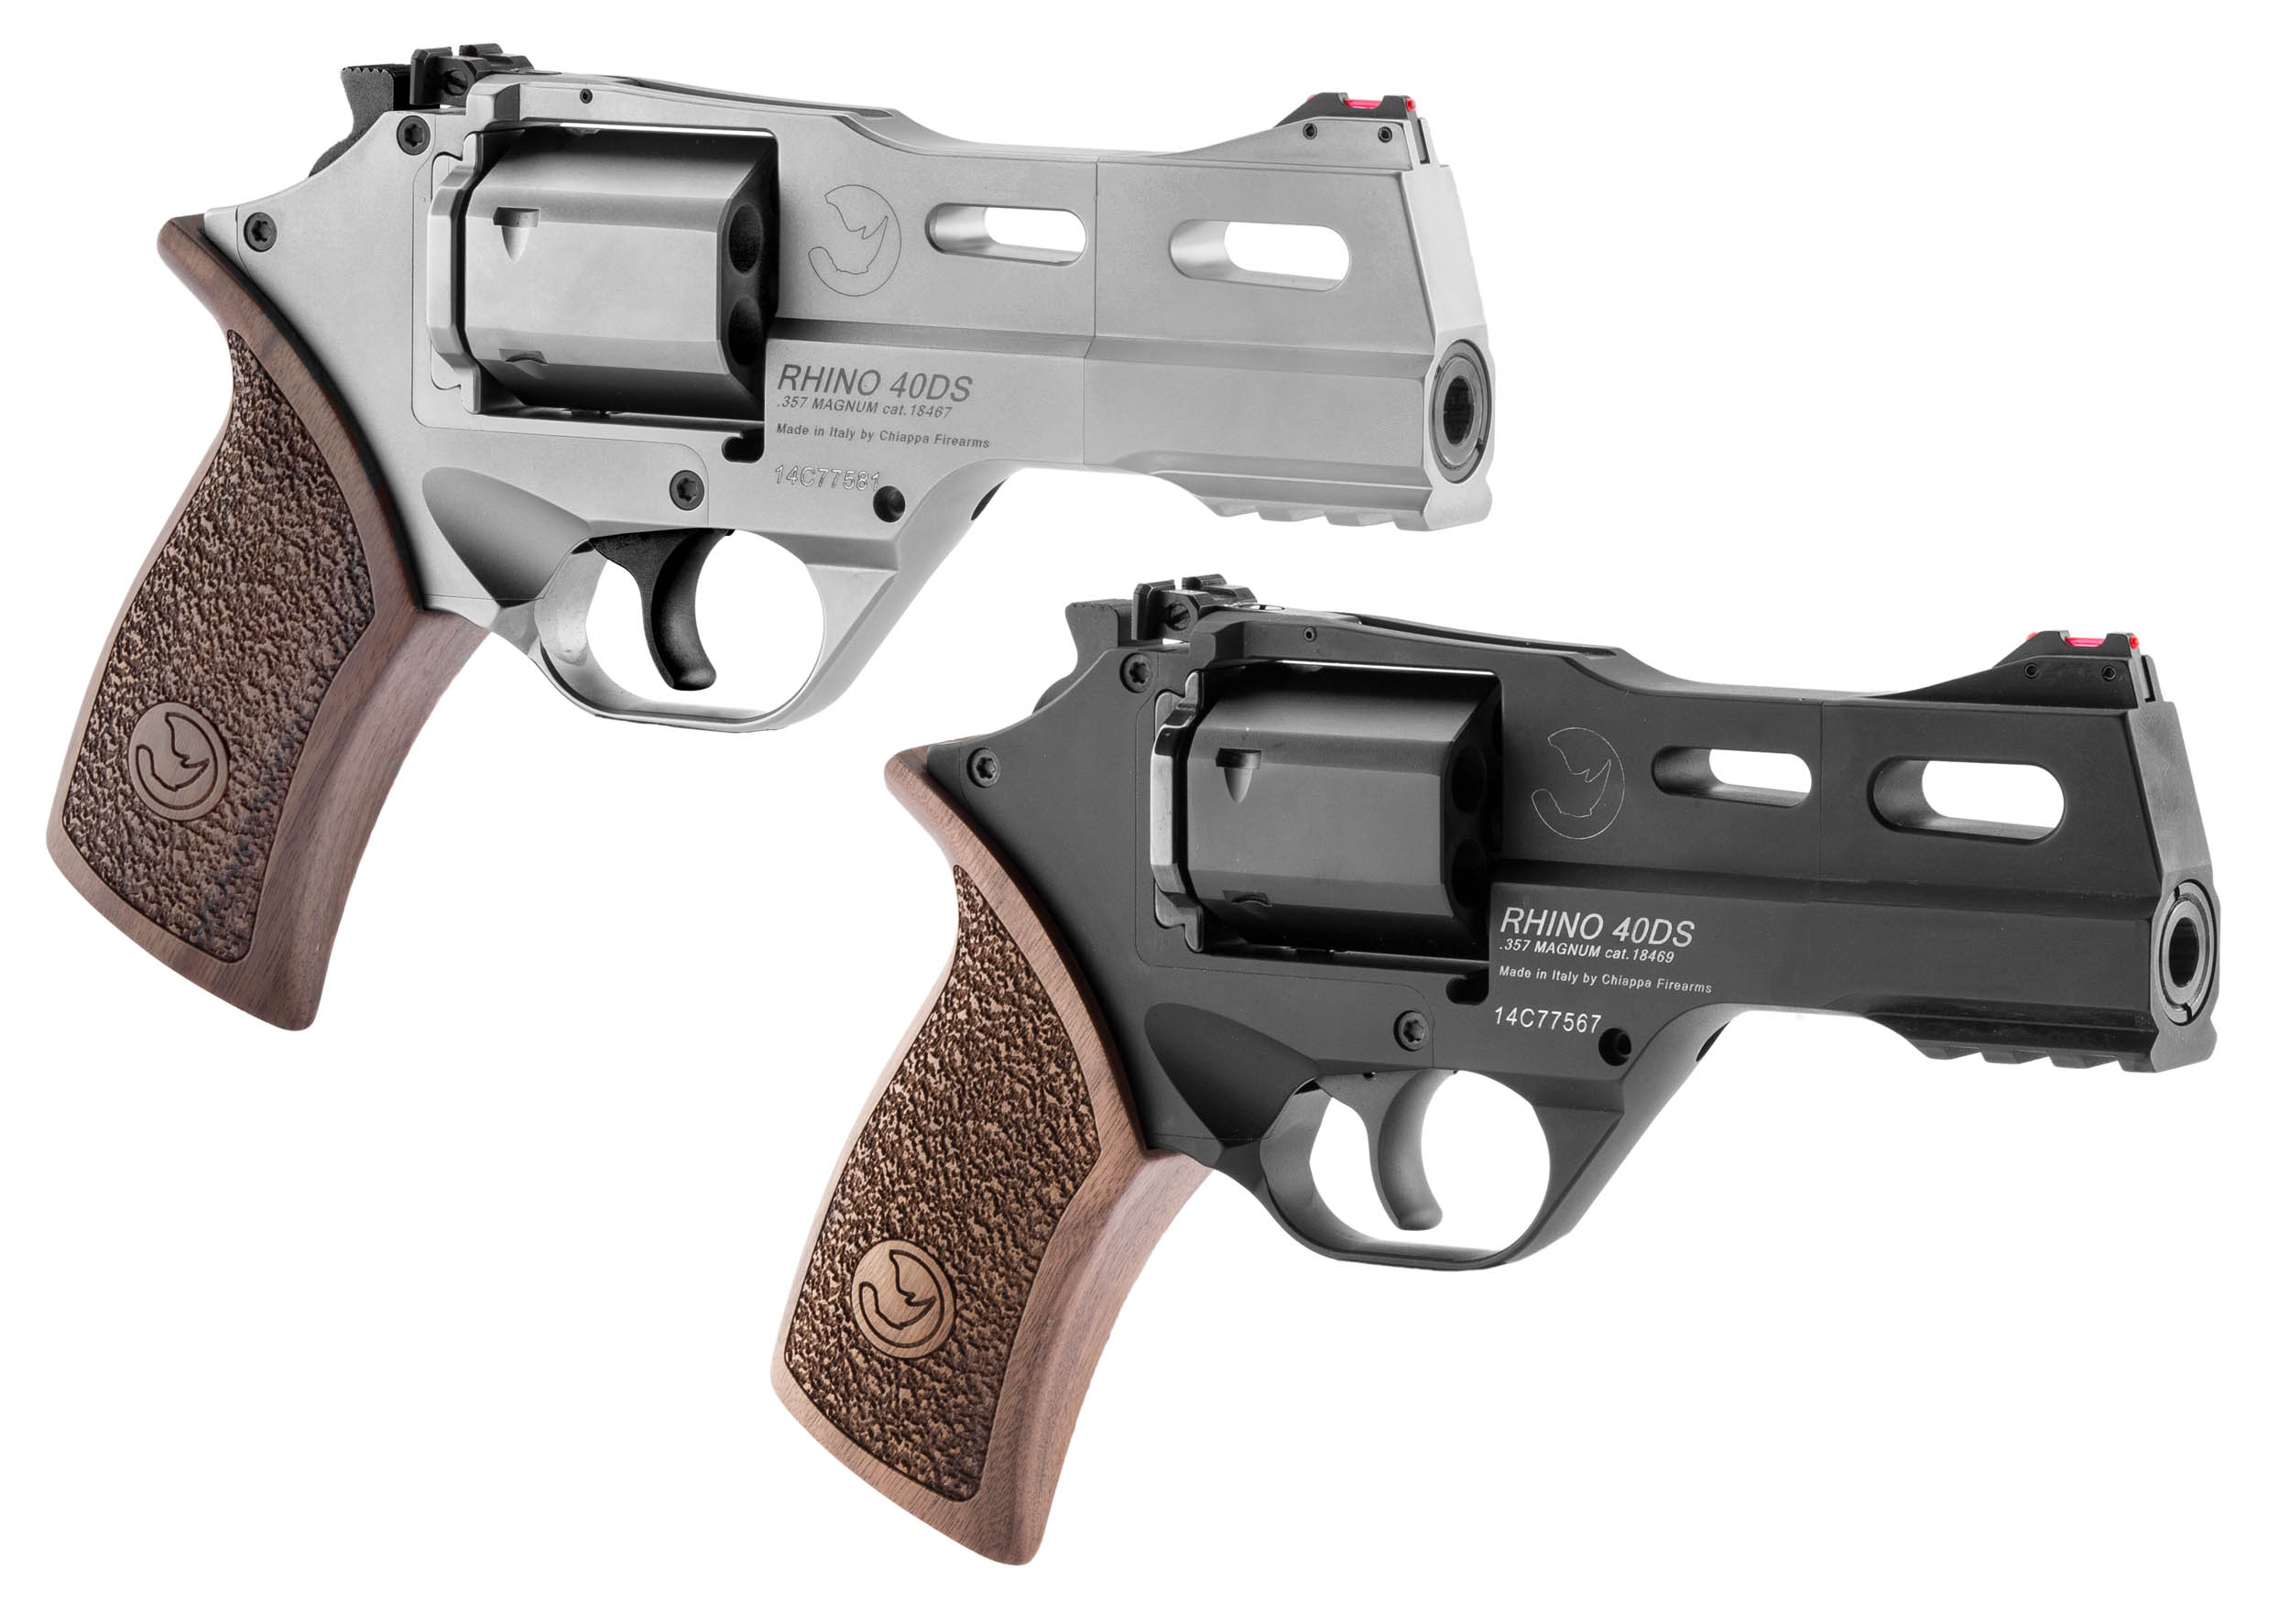 Pistolet Revolver Police Jouet 12 Coups en Métal Cup Gun Jouet